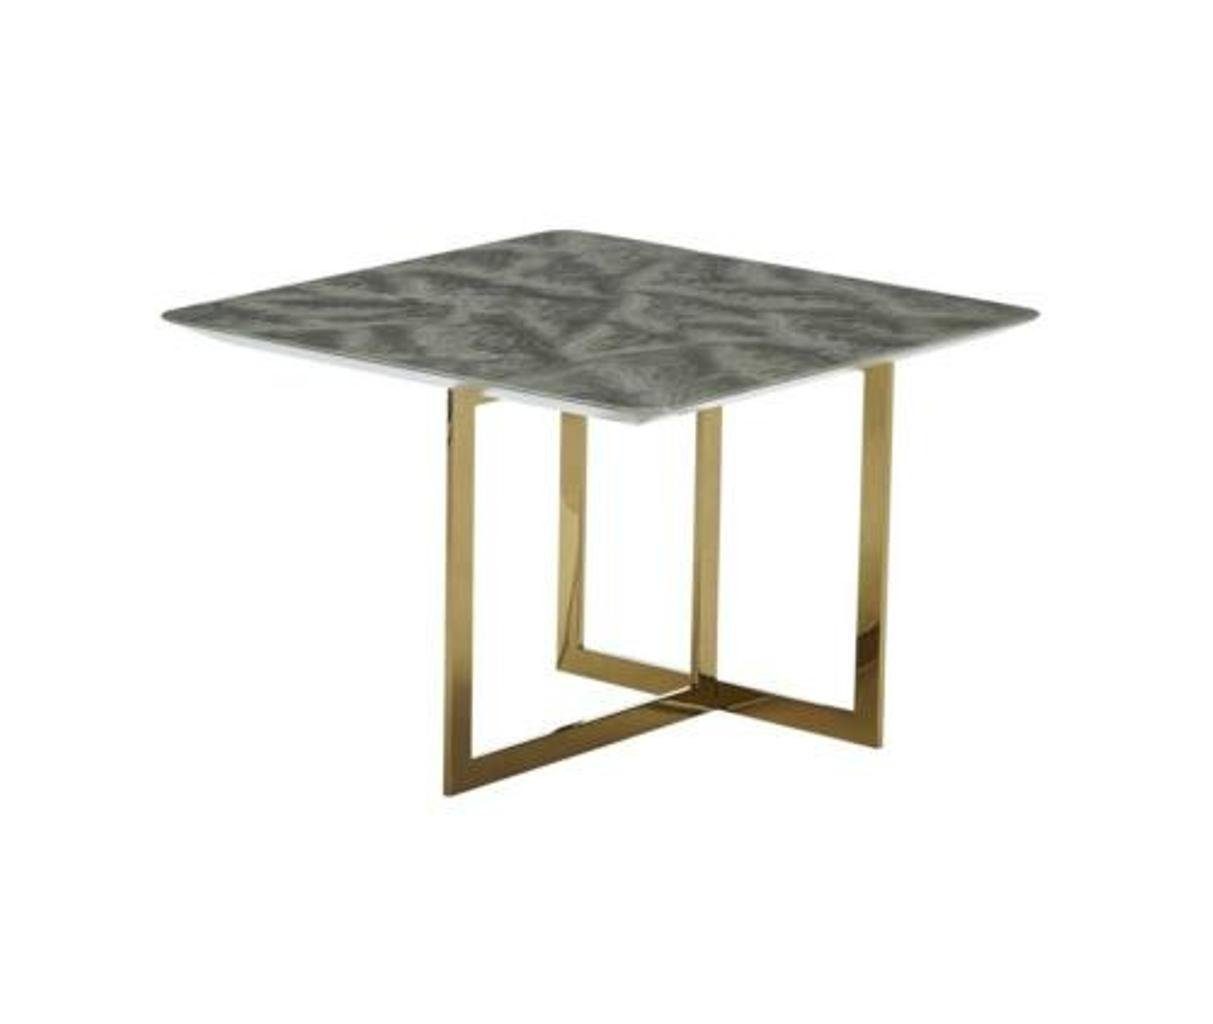 Luxus Möbel Beistelltisch JVmoebel Neu Tische Couchtisch Beistelltisch, Holz Design Modern